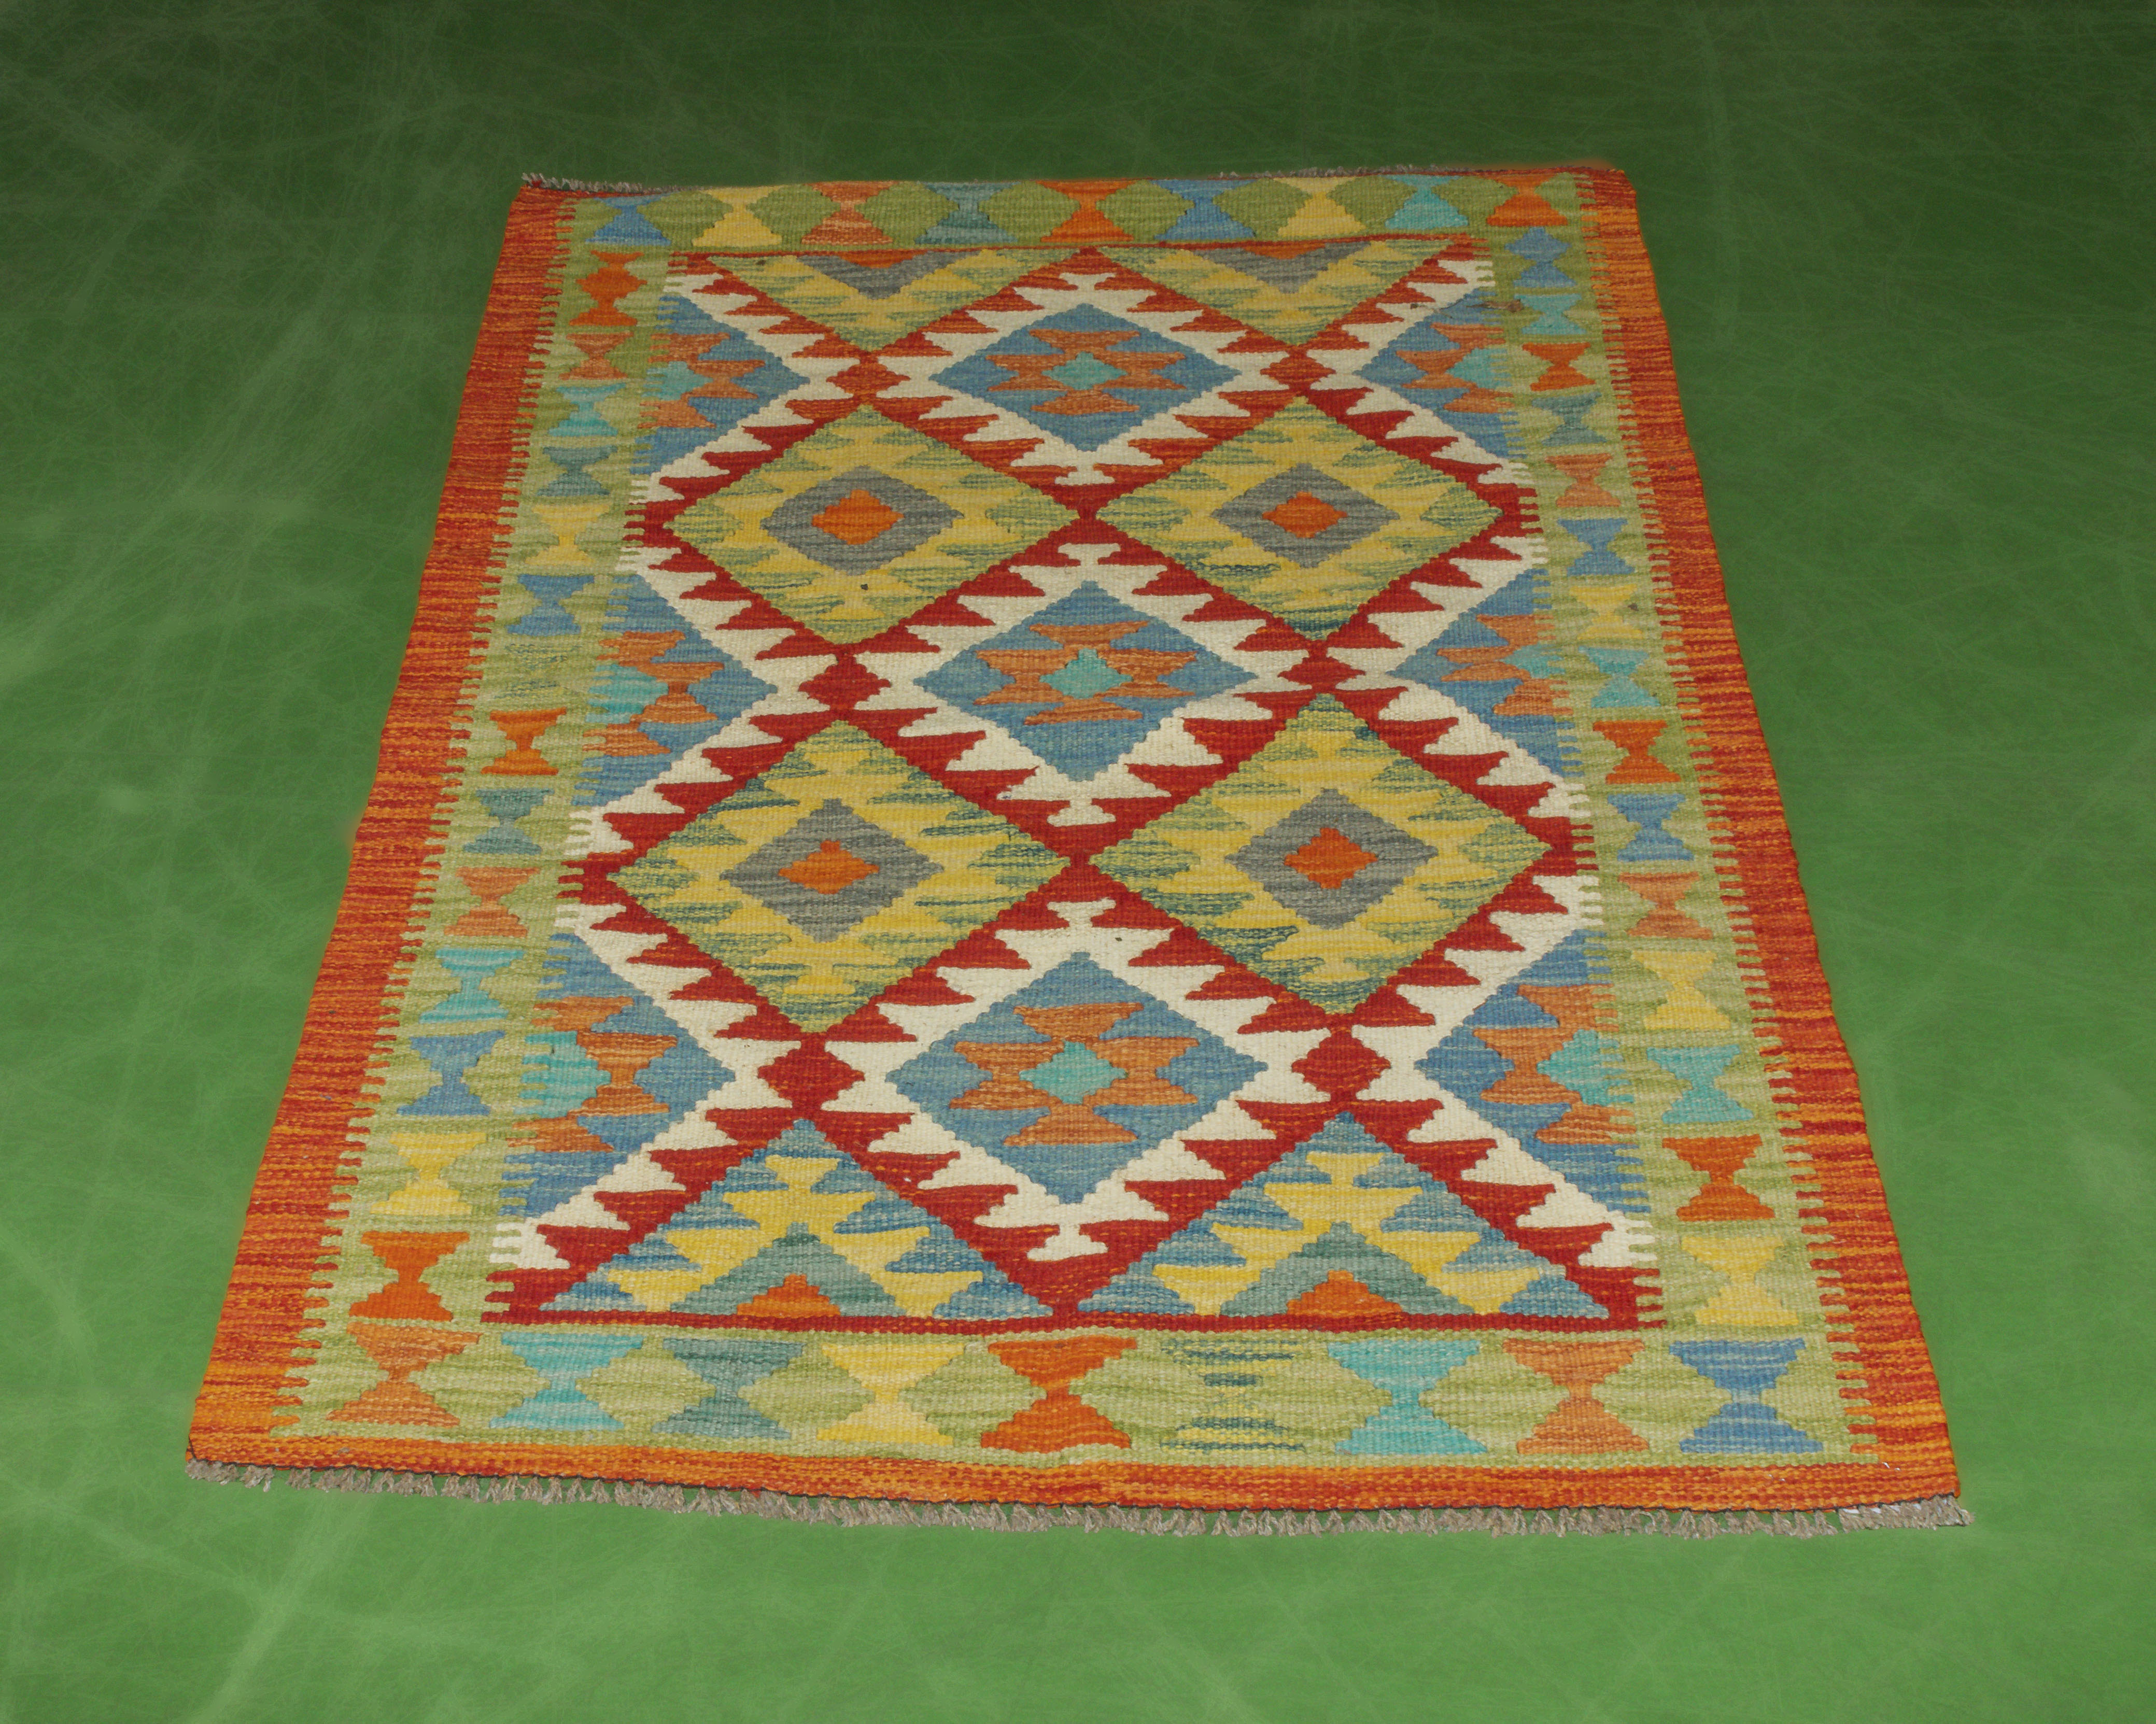 Afghan vegetable dyed wool Kilim rug 154cm x 98cm